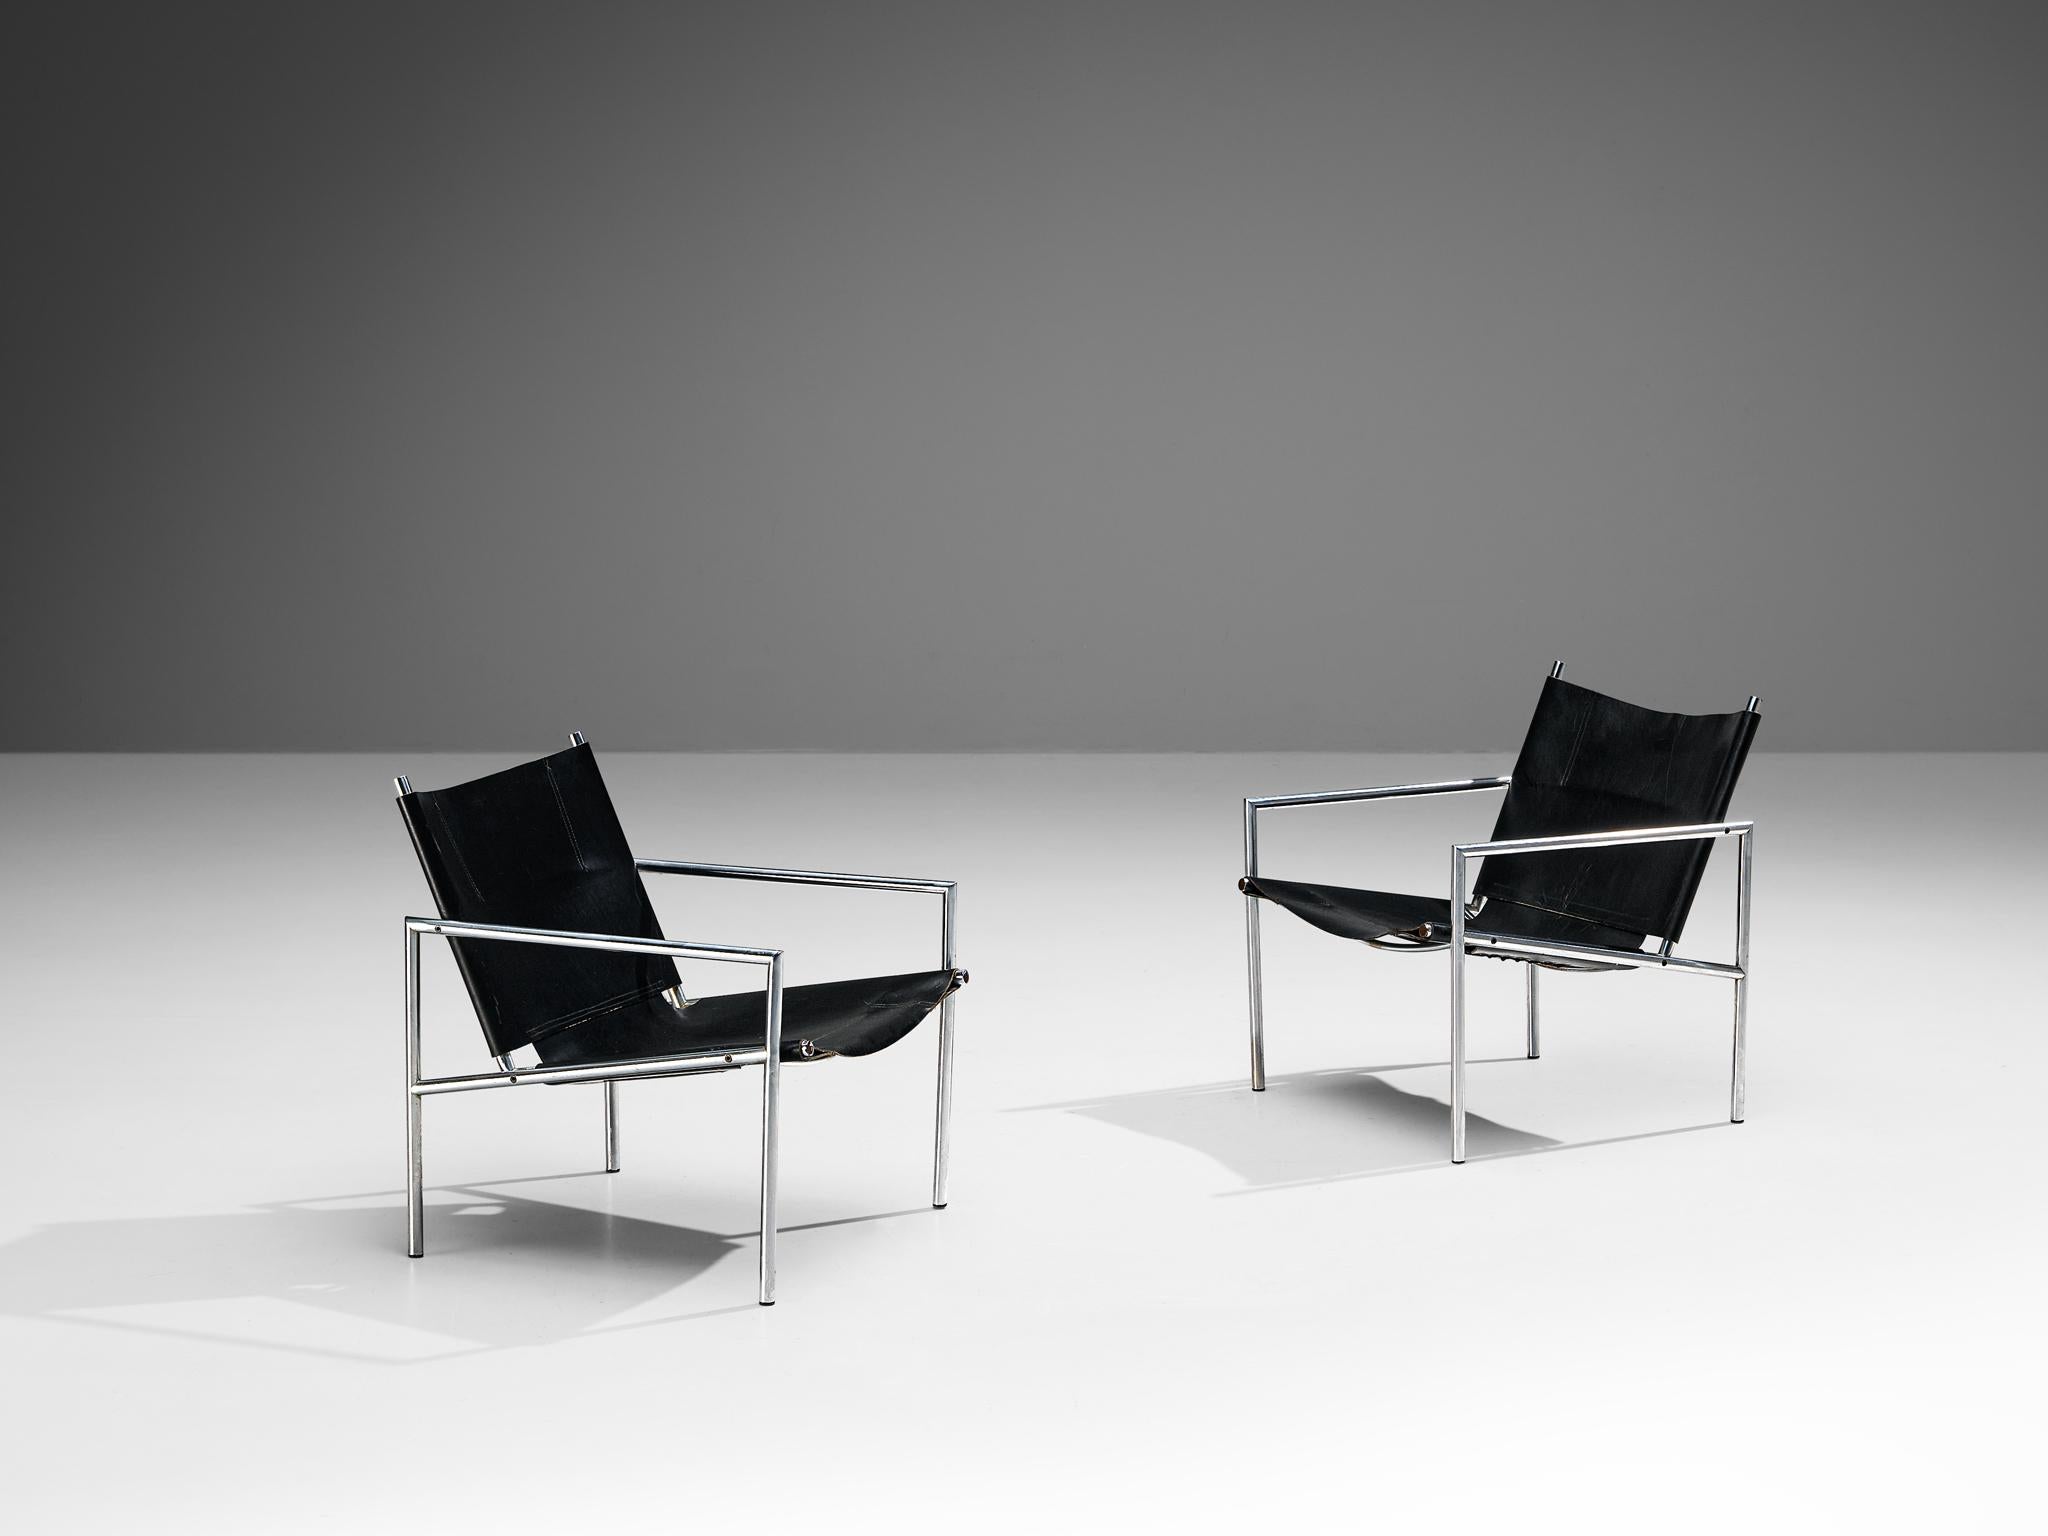 Martin Visser pour 't Spectrum, chaises longues, modèle 'SZ 02', cuir, acier brossé, Pays-Bas, 1965

Ces fauteuils modernes et minimalistes sont fabriqués à partir d'un tube d'acier brossé combiné à un revêtement en cuir noir. La construction